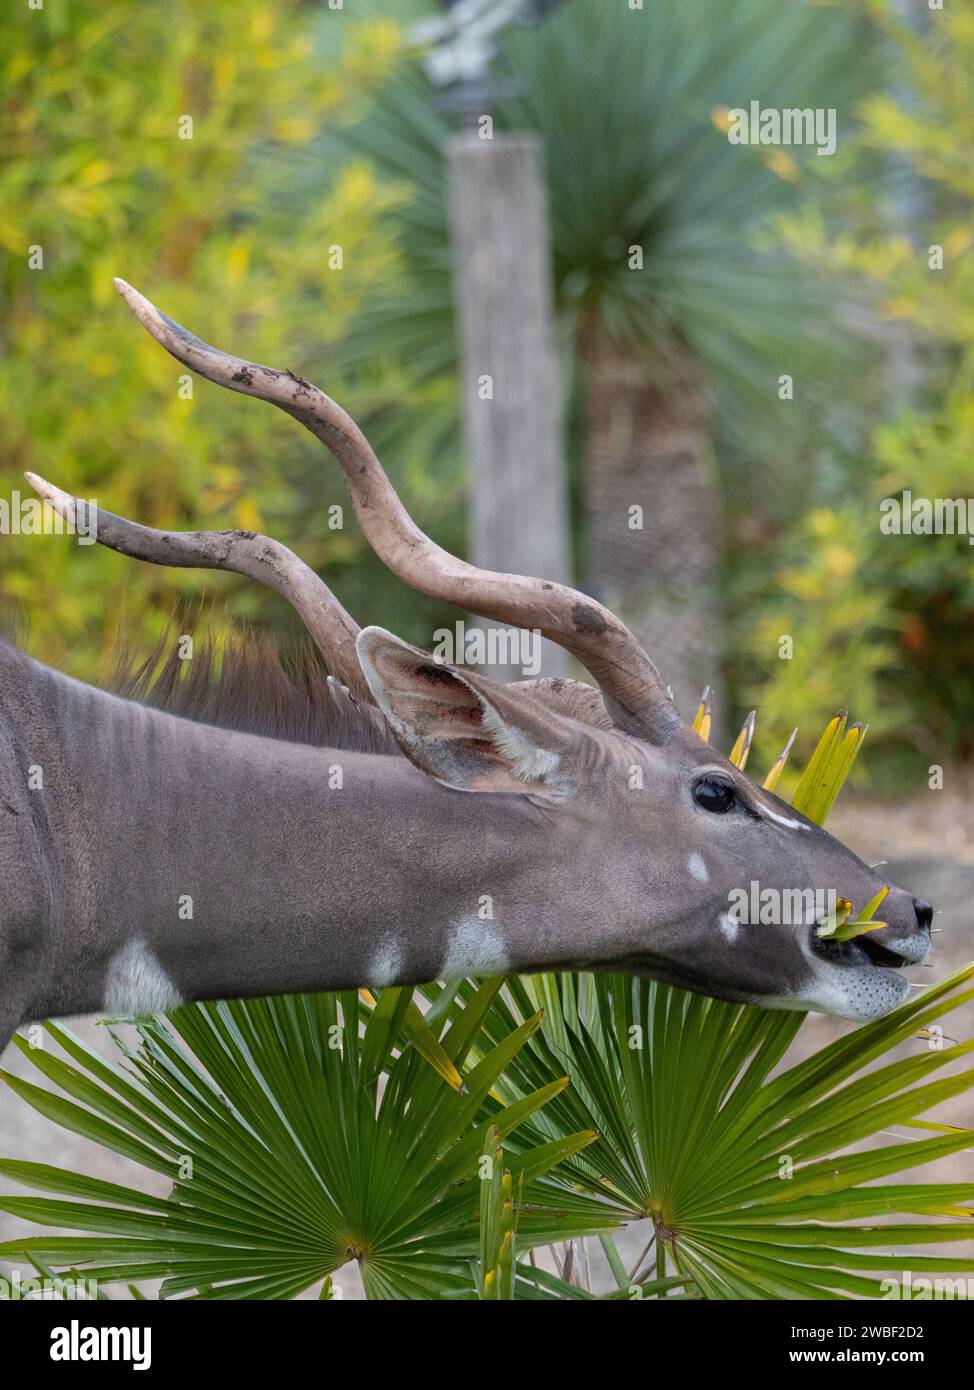 Un'antilope maestosa è avvistata al pascolo nel suo habitat naturale, con le sue impressionanti corna che creano un contrasto incredibile con il lussureggiante verde vegetale Foto Stock